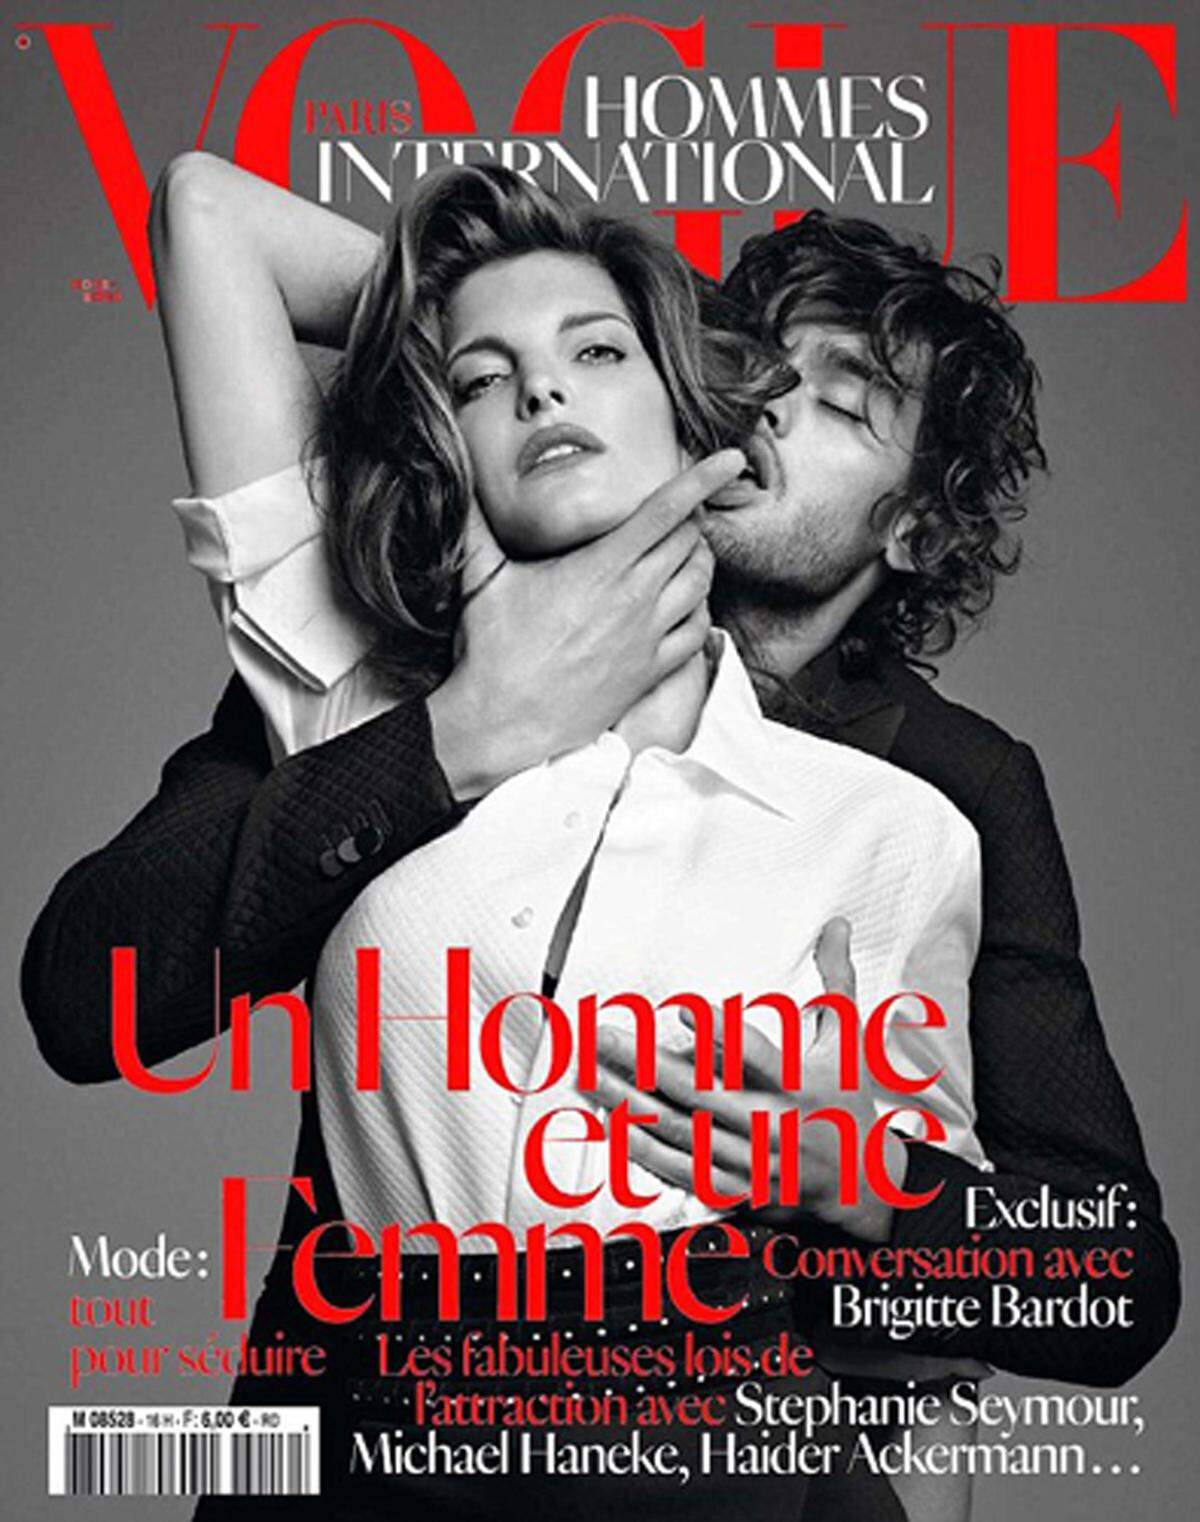 Immerhin sorgte erst vor wenigen Monaten das Cover der Vogue Homme International für einen Skandal. Das Titelbild würde Gewalt an Frauen verherrlichen, meinten zumindest diverse Frauenrechtsorganisationen, die ein Verkaufsverbot der Auflage forderten. Der Condé Nast Verlag wies die Vorwürfe damals zurück. Es handle sich lediglich um dargestellte Leidenschaft.